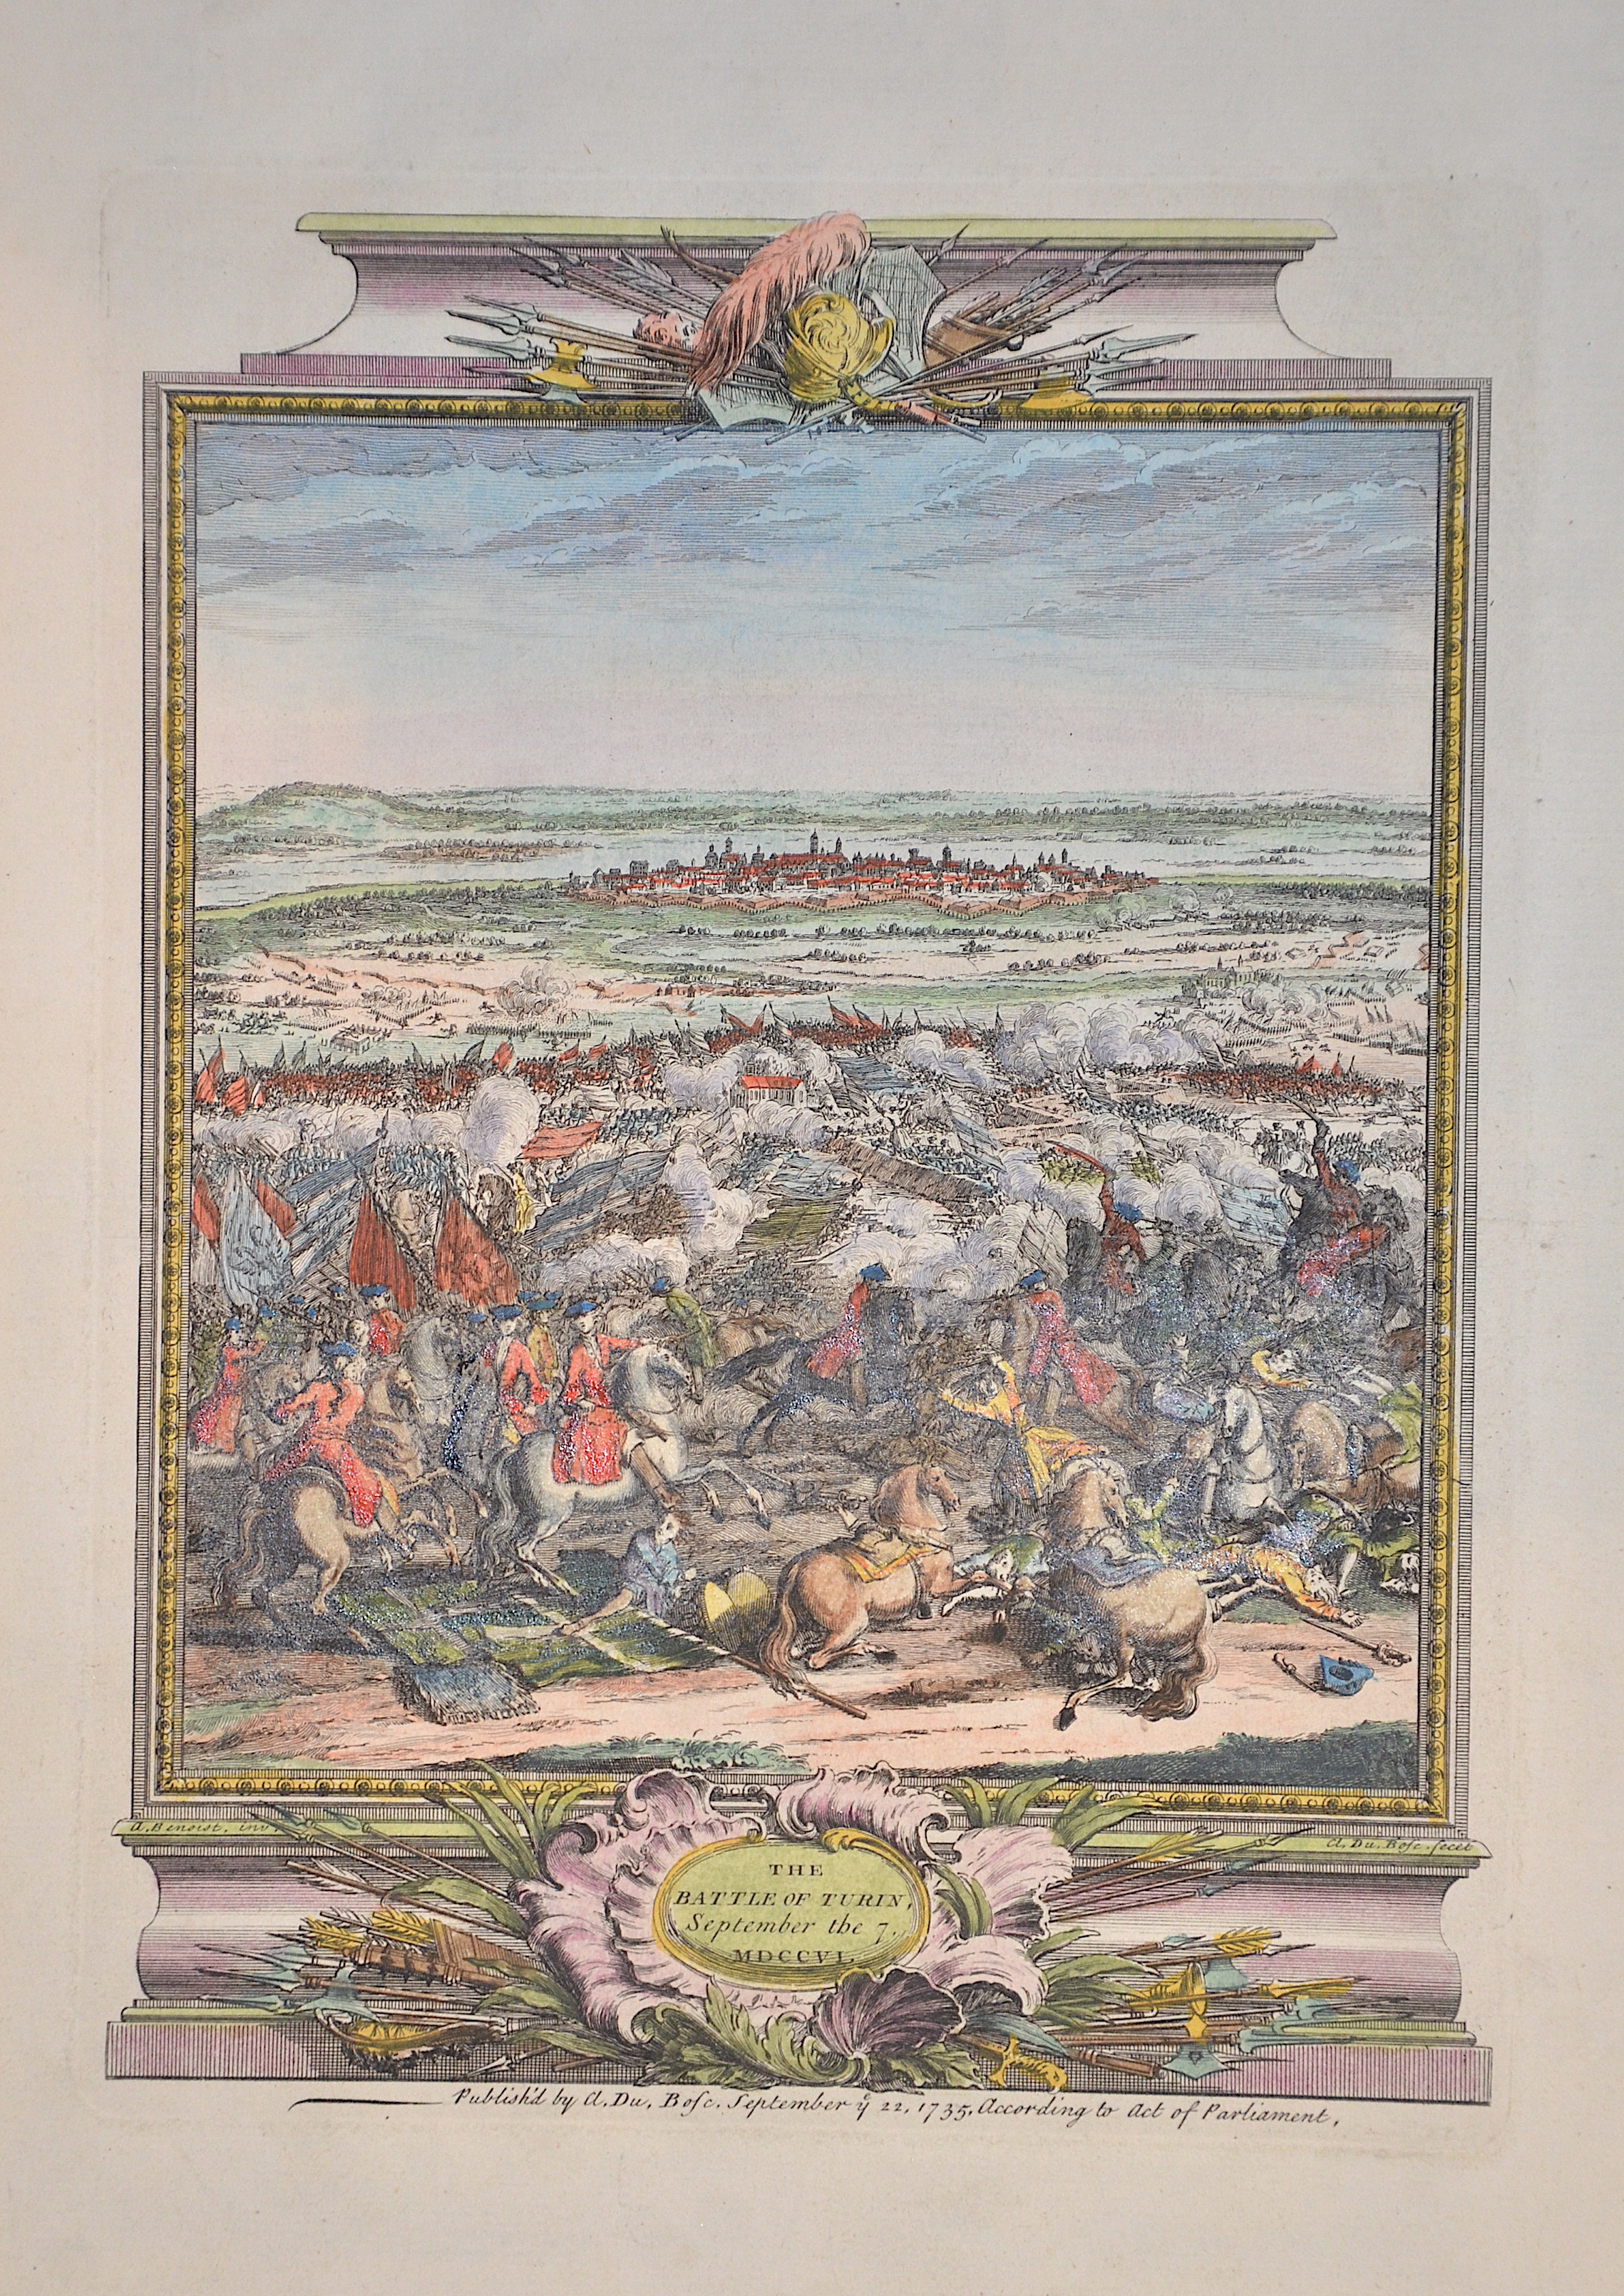 Benoist  The Battle of Turin, September the 7. MDCCVI